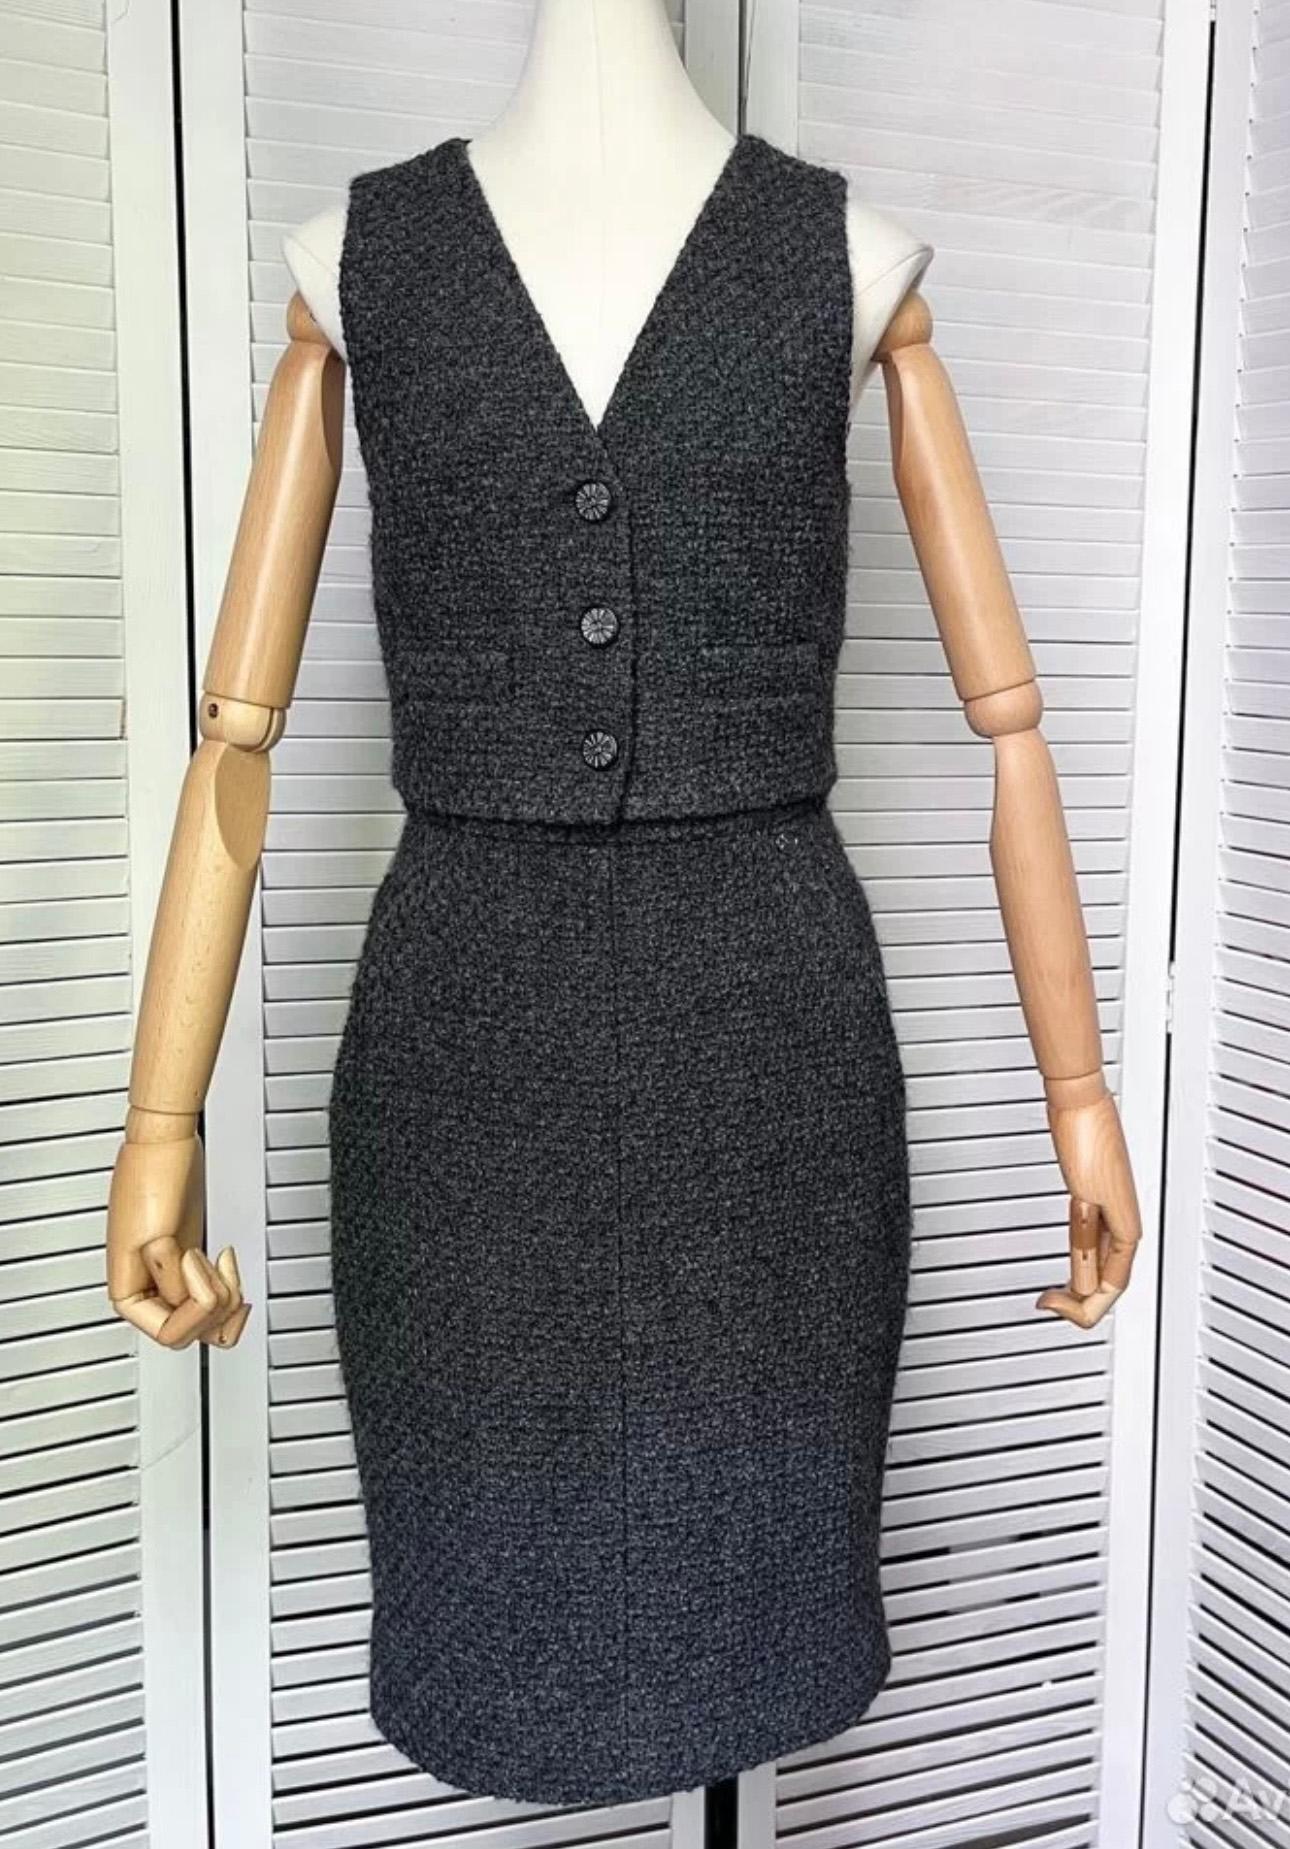 Tailleur Chanel en tweed anthracite : veste / gilet avec détails en cuir et jupe intermédiaire.
- Boutons du logo CC
Taille 36 FR. Jamais porté.